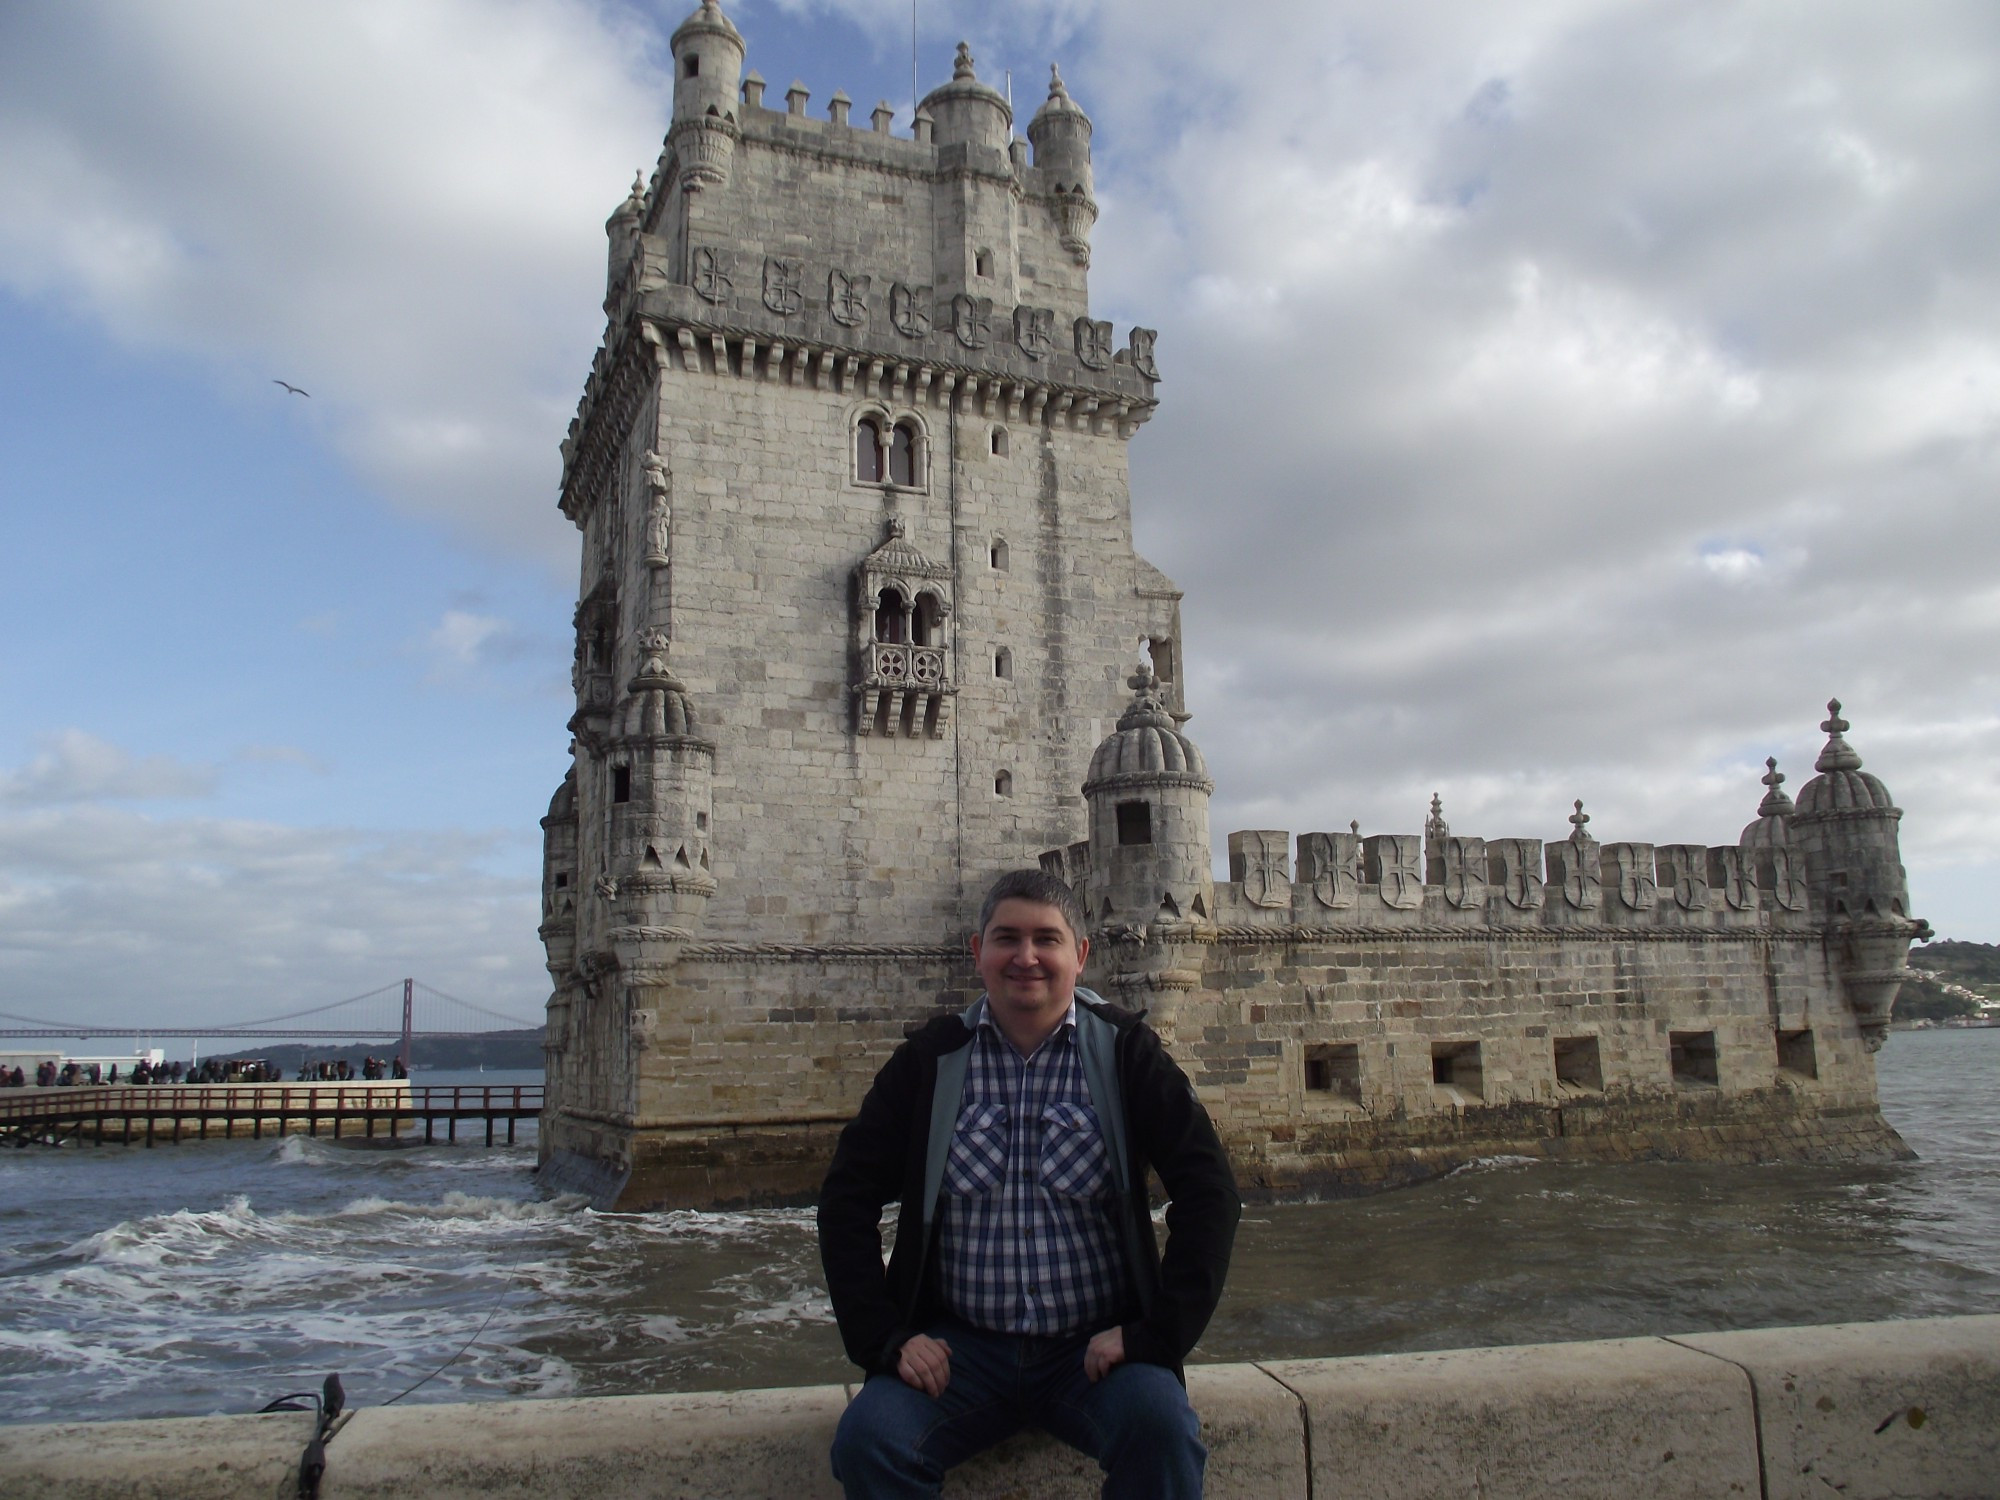 Лиссабон. Я на фоне башни Белен. (01.01.2018)